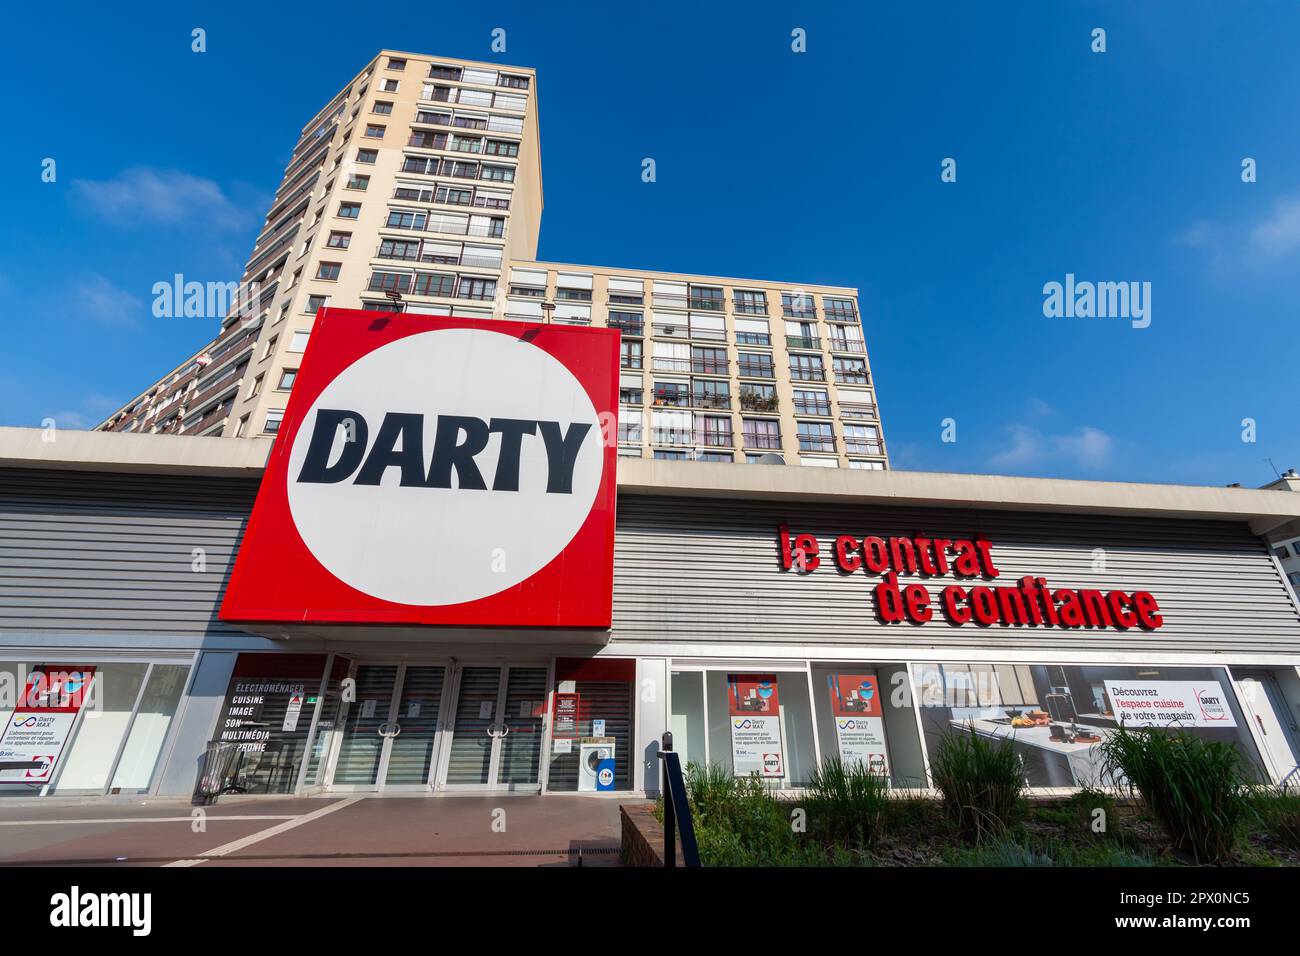 Vue extérieure d'un magasin Darty, une entreprise française spécialisée dans la vente au détail d'appareils ménagers, d'ordinateurs, de téléphones et d'équipements audiovisuels Banque D'Images